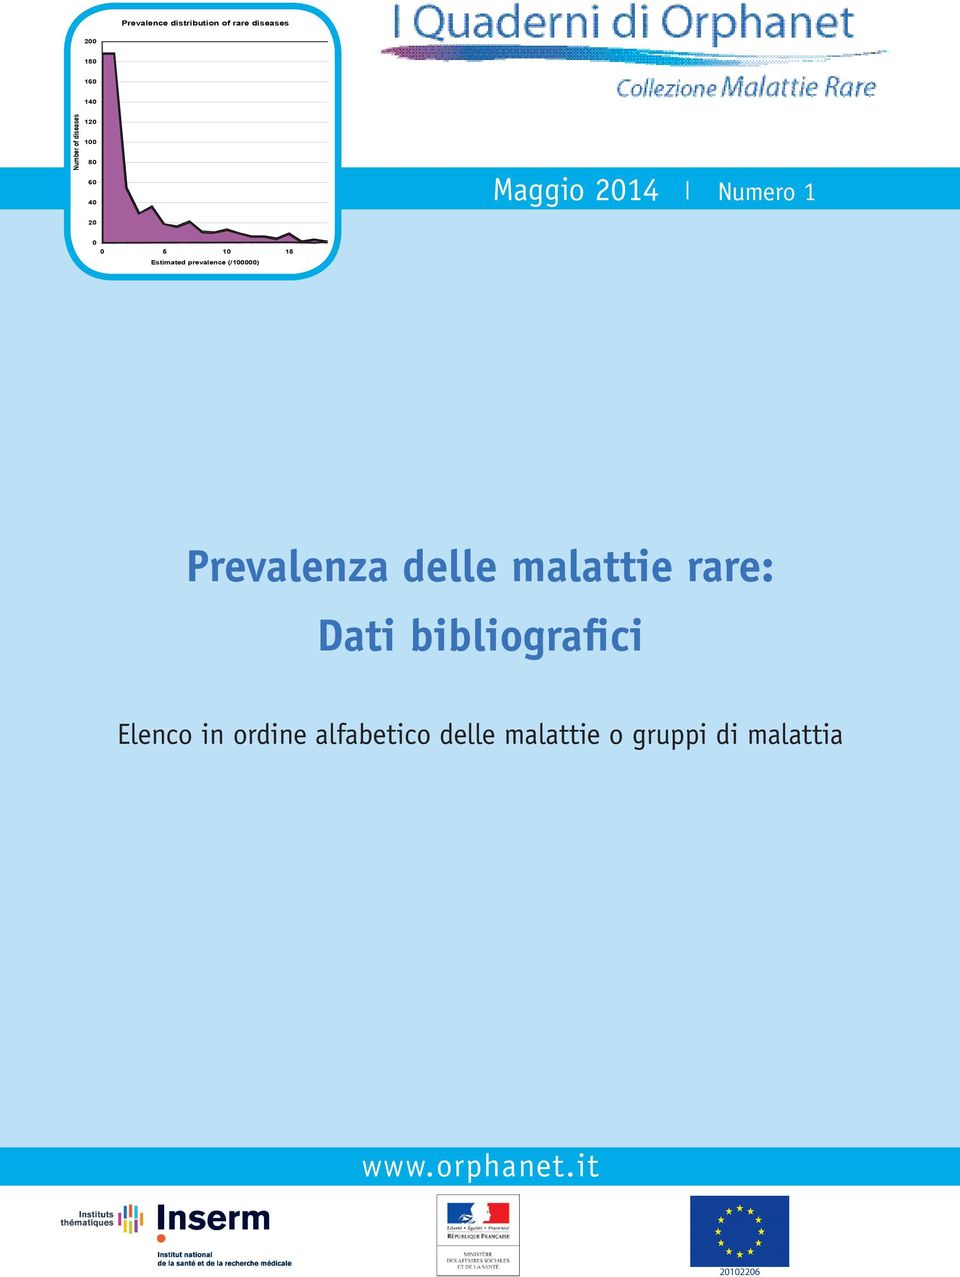 Estimated prevalence (/00000) delle malattie rare: Dati bibliografici